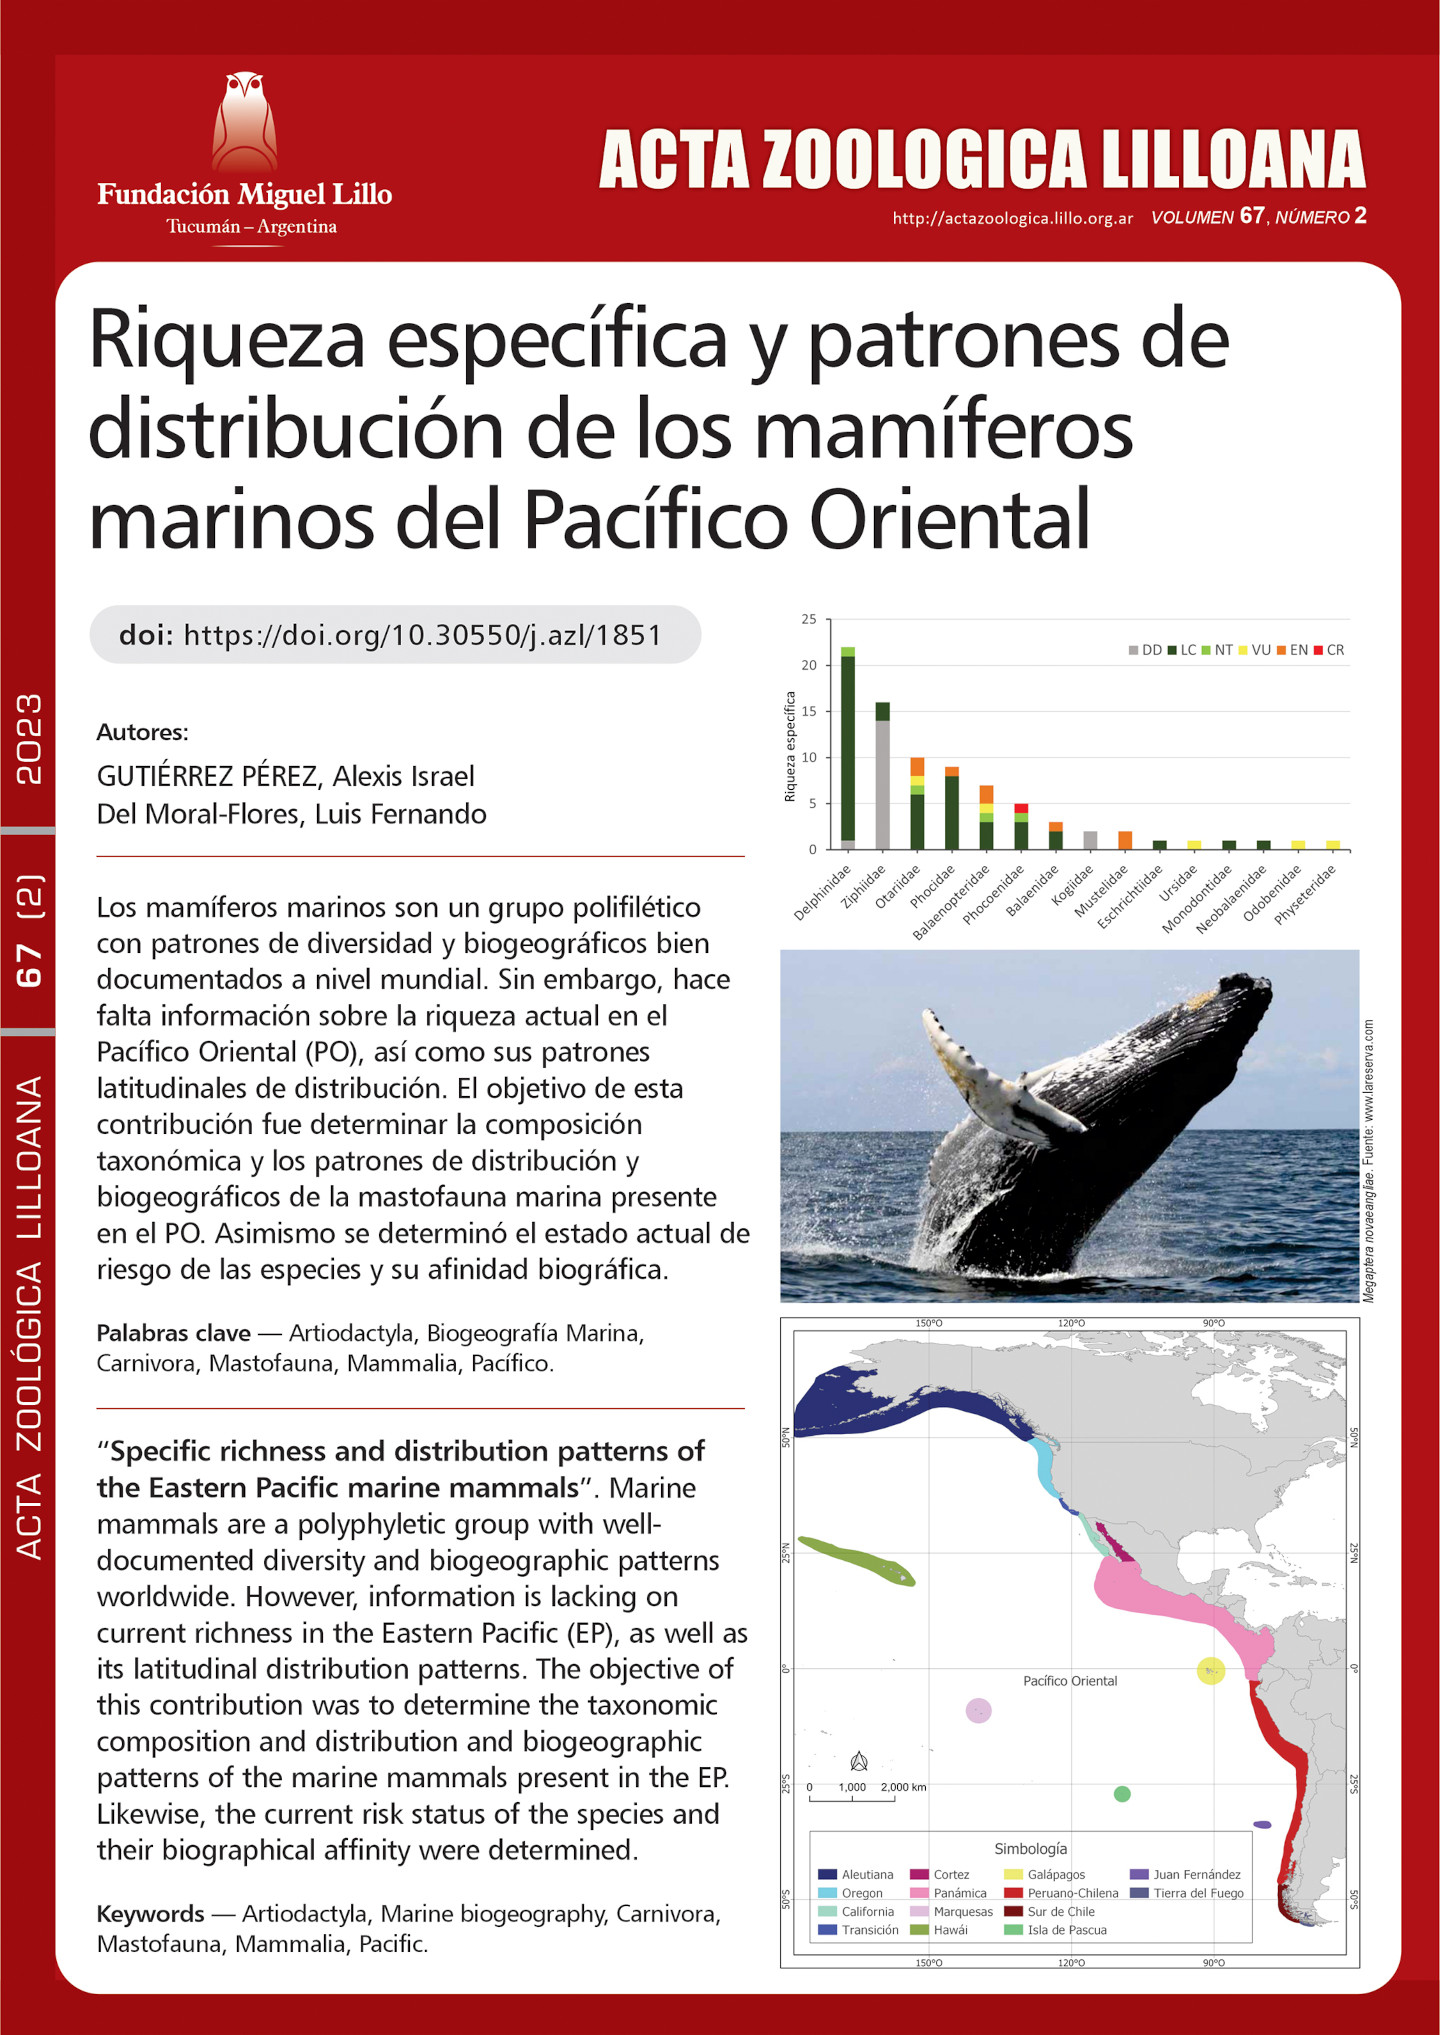 Riqueza específica y patrones de distribución de los mamíferos marinos del Pacífico Oriental